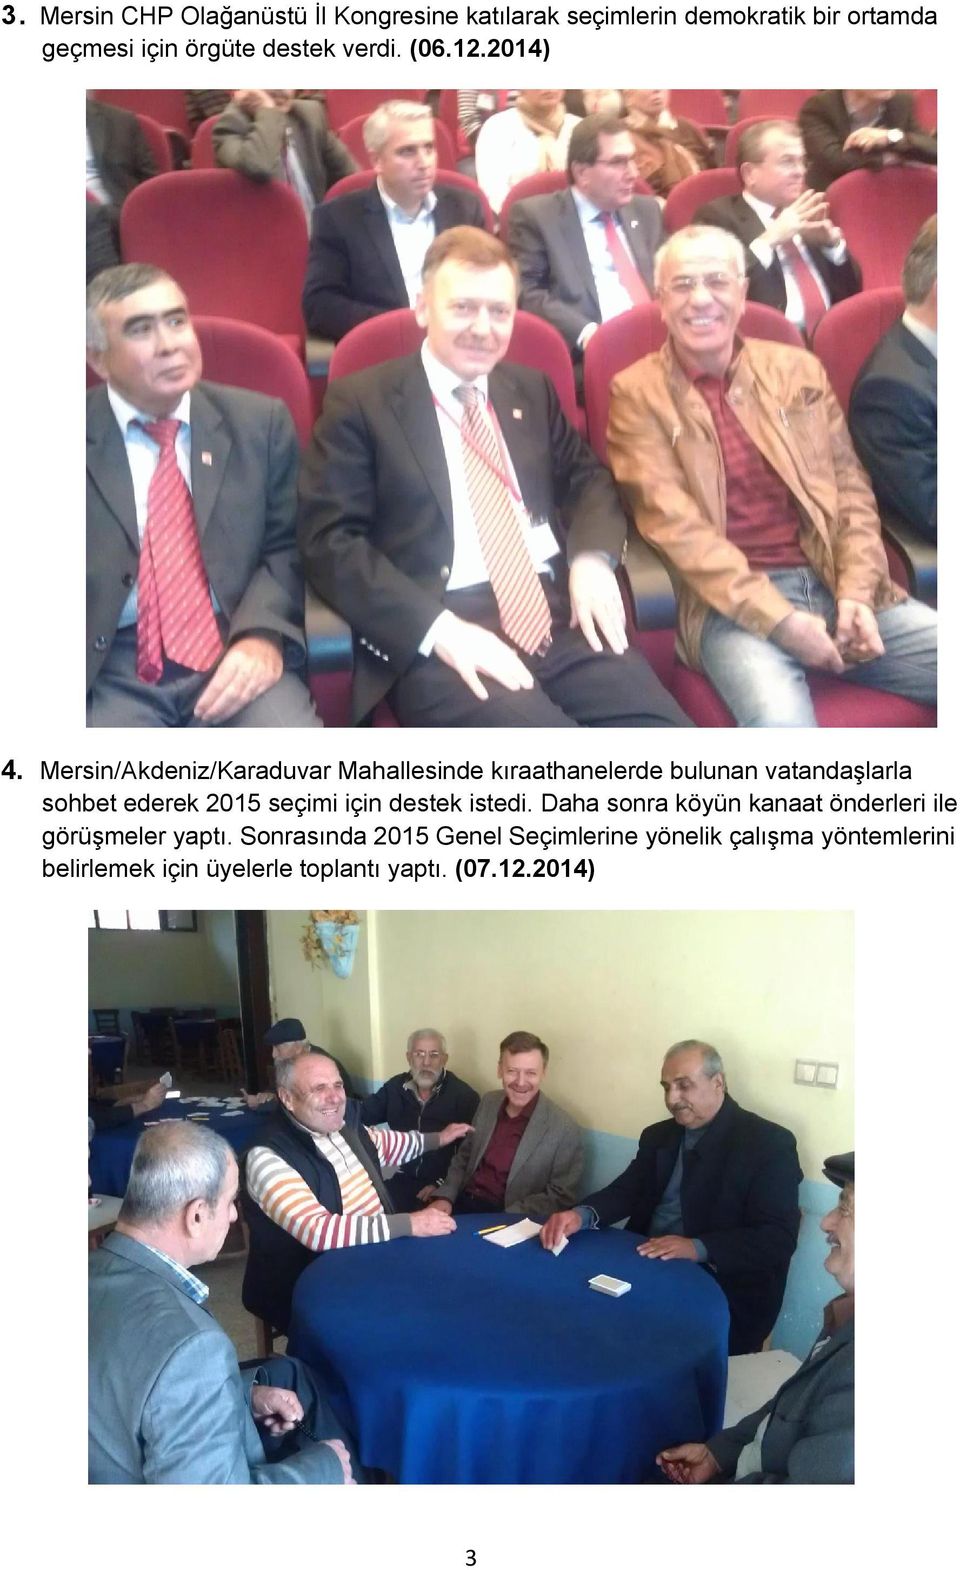 Mersin/Akdeniz/Karaduvar Mahallesinde kıraathanelerde bulunan vatandaşlarla sohbet ederek 2015 seçimi için